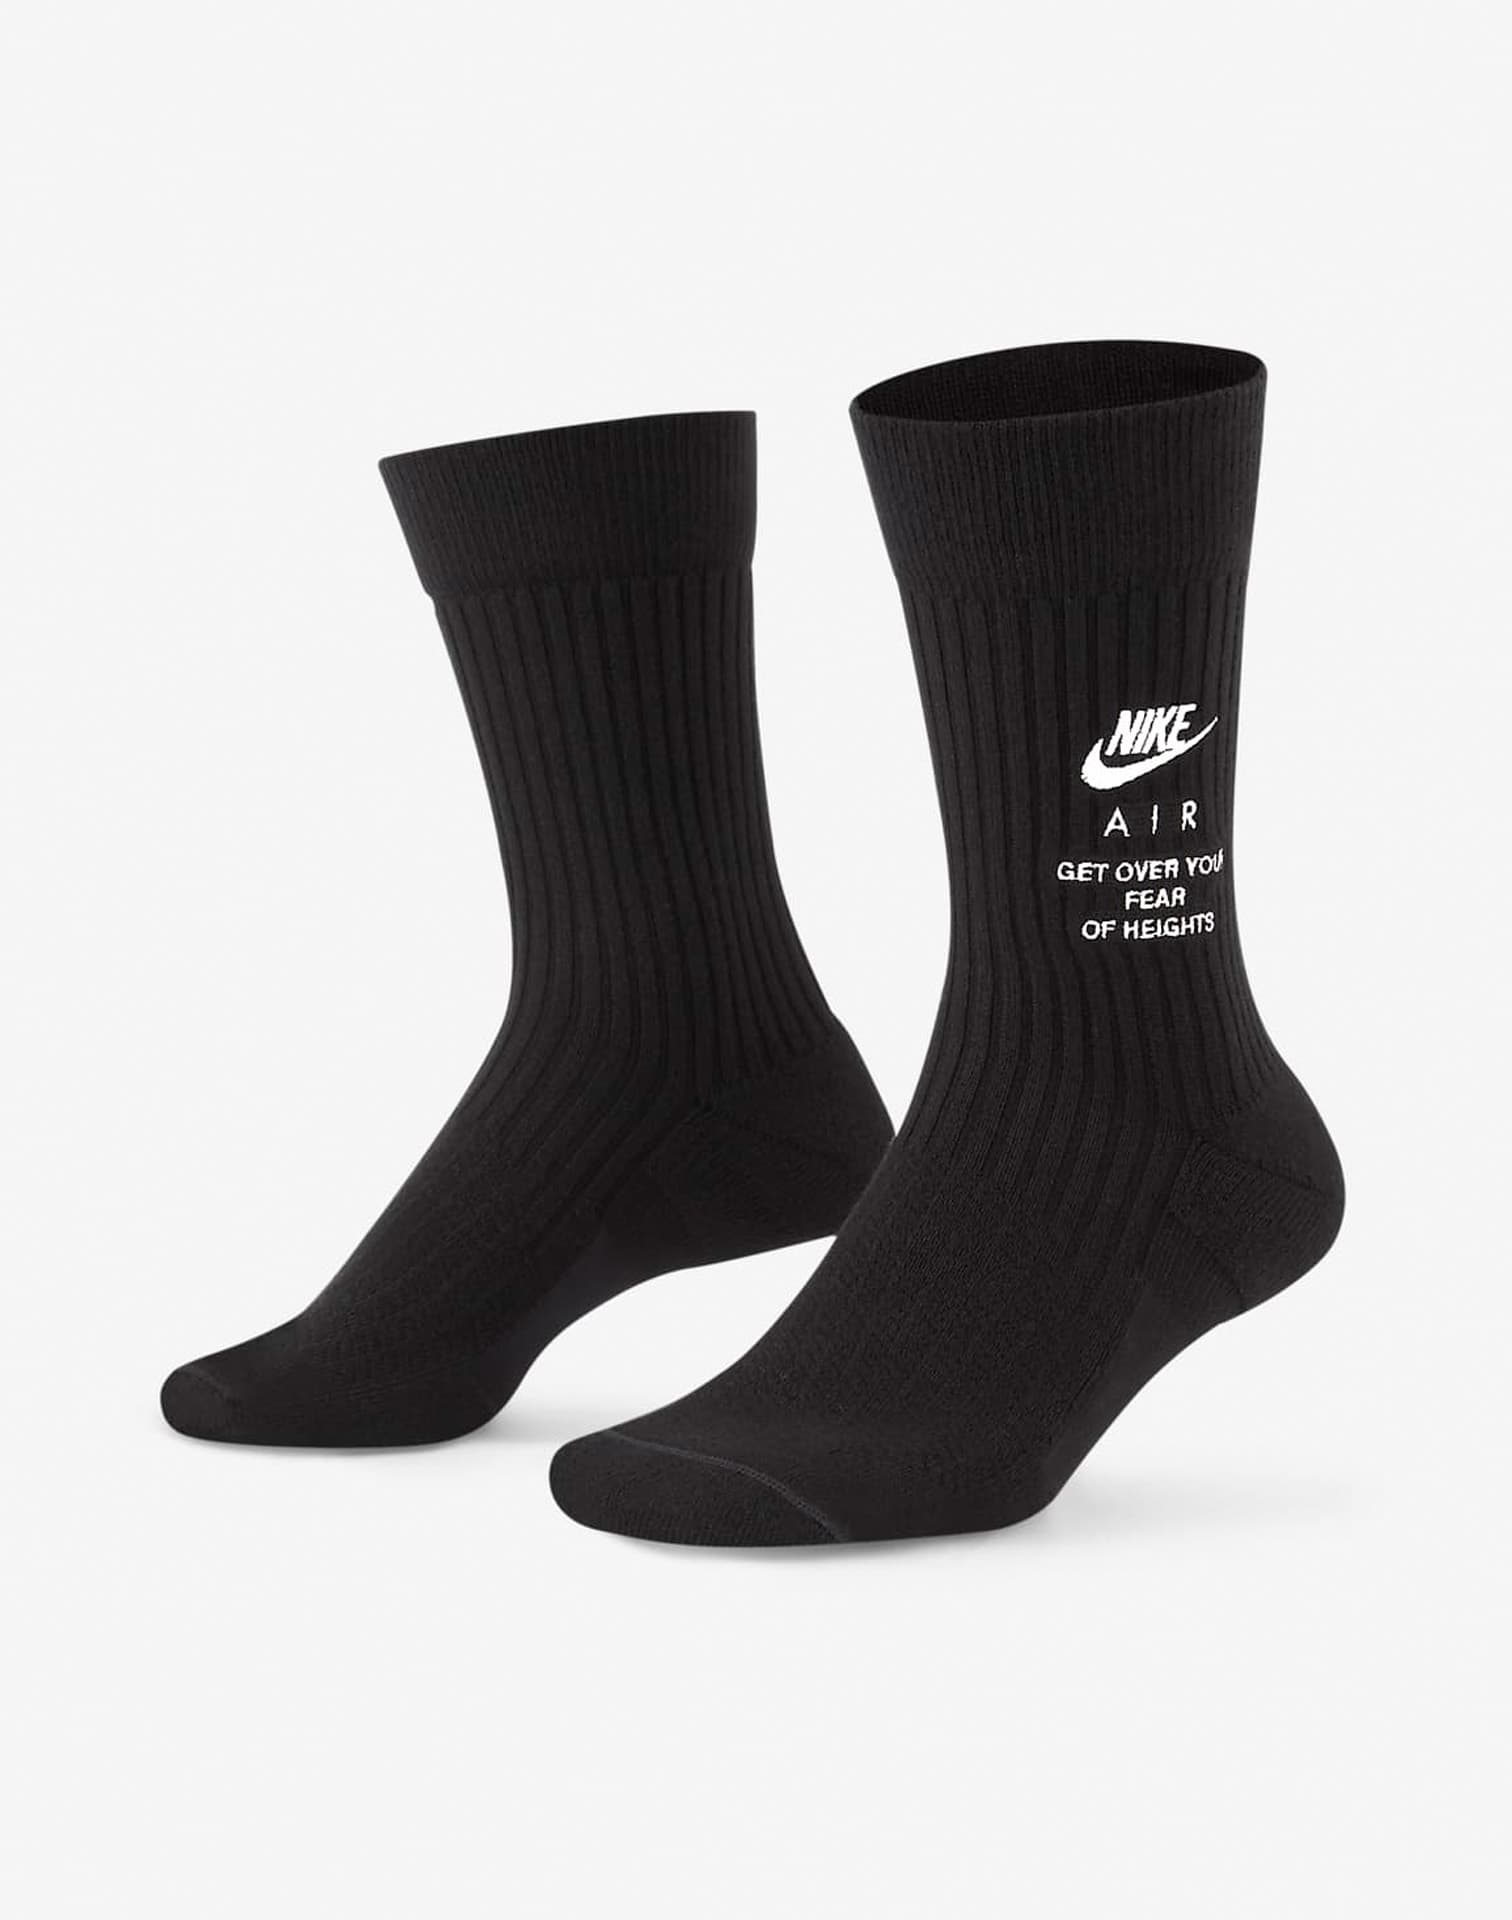 Nike Snkr Sox Crew Socks#N#– DTLR